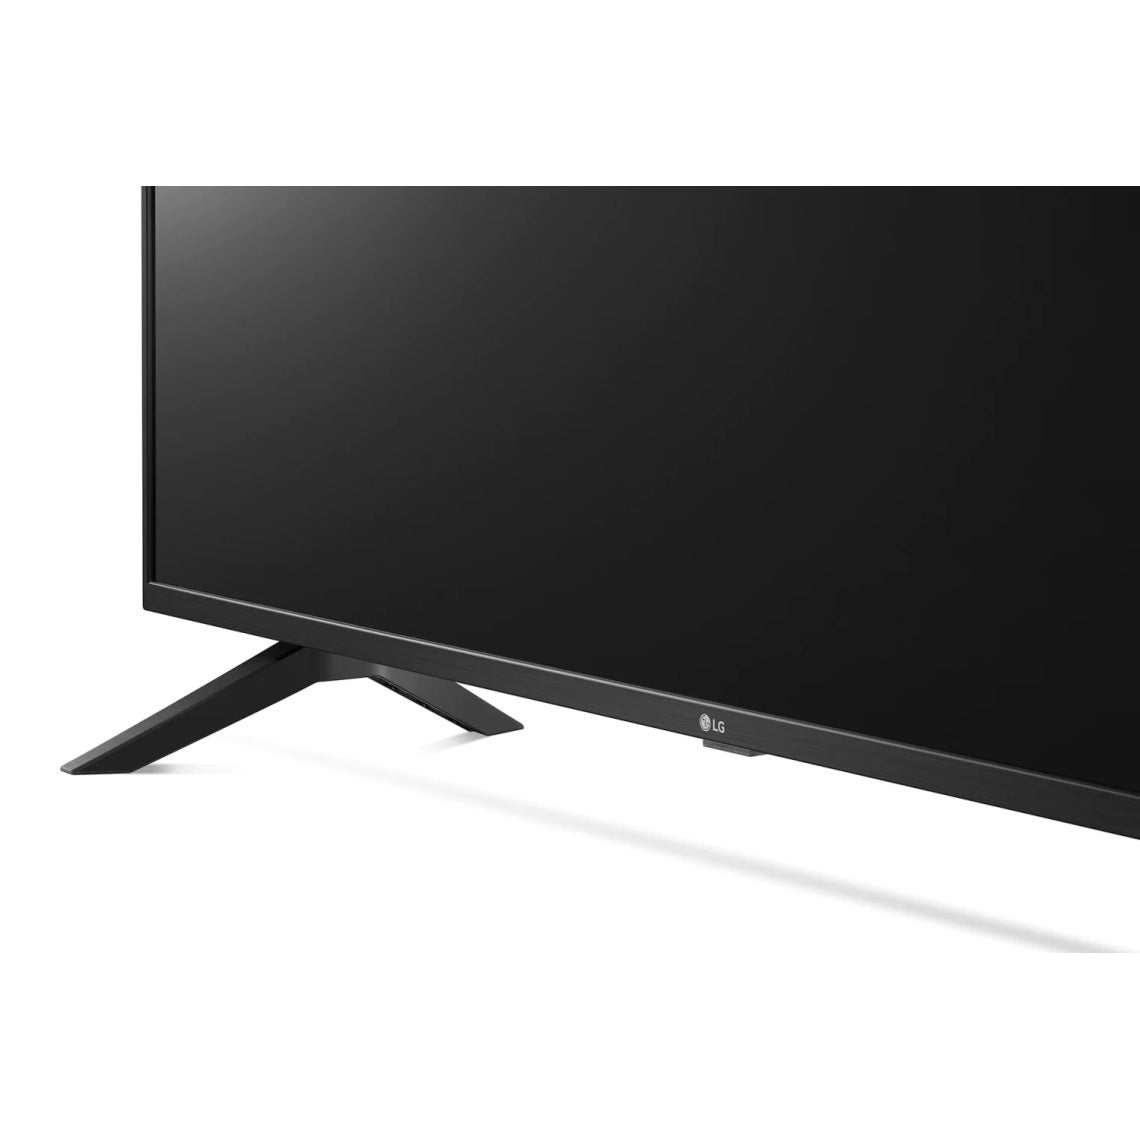 LG TV 55 pouces (139cm) LED Ultra HD 4K Smart TV, découvrez la LG 55UH668V